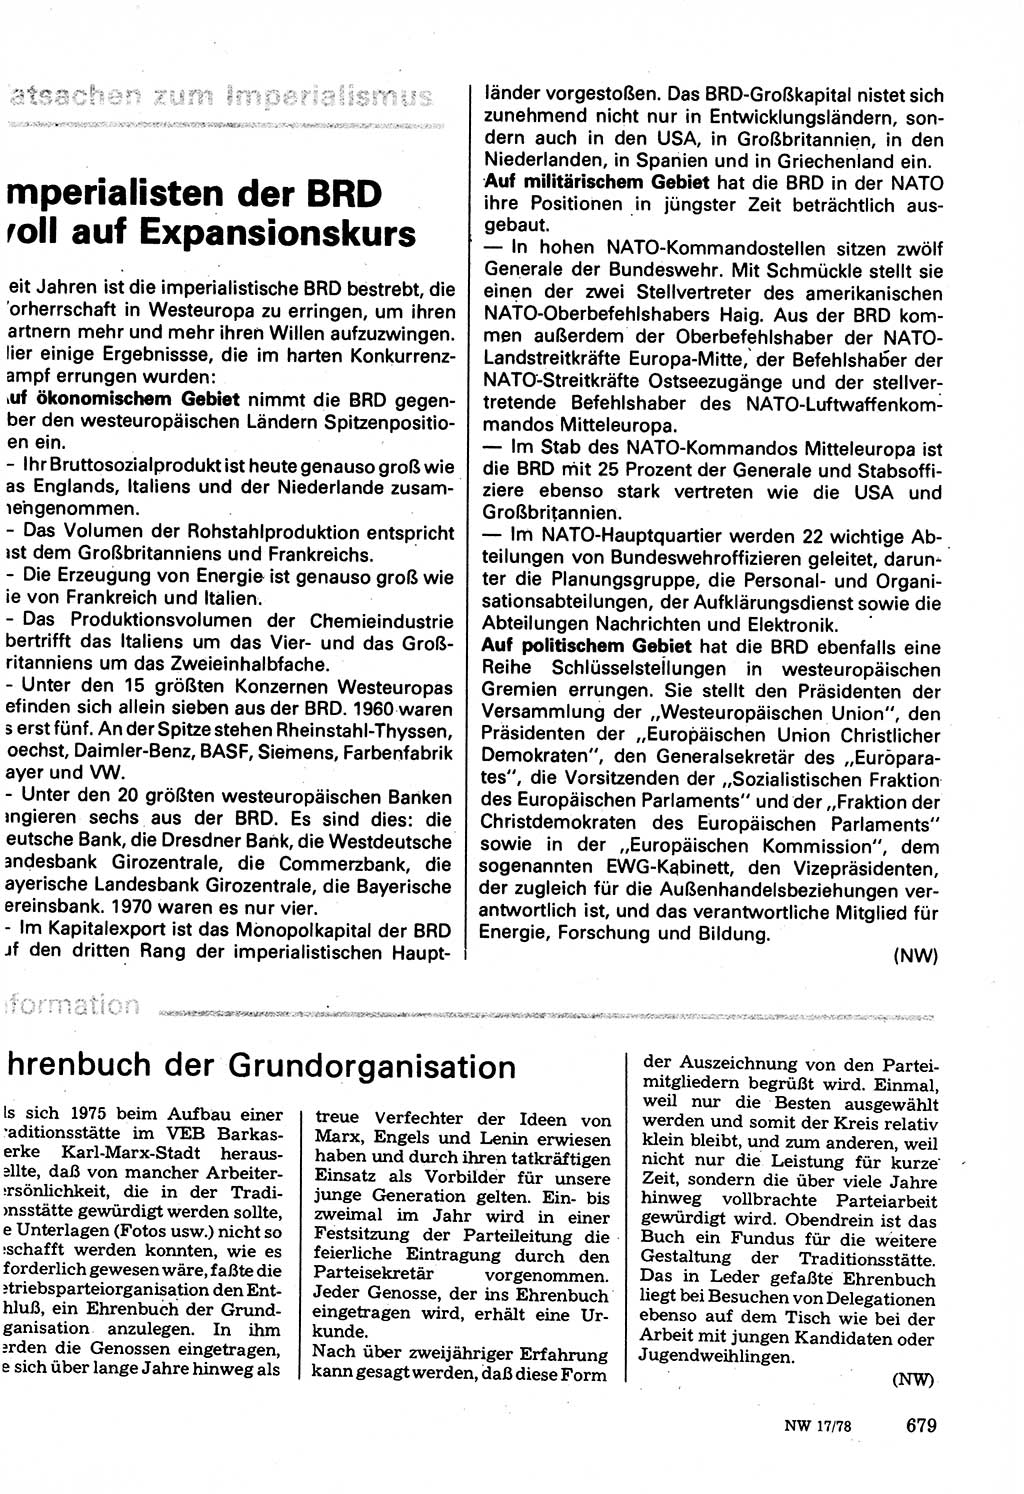 Neuer Weg (NW), Organ des Zentralkomitees (ZK) der SED (Sozialistische Einheitspartei Deutschlands) für Fragen des Parteilebens, 33. Jahrgang [Deutsche Demokratische Republik (DDR)] 1978, Seite 679 (NW ZK SED DDR 1978, S. 679)